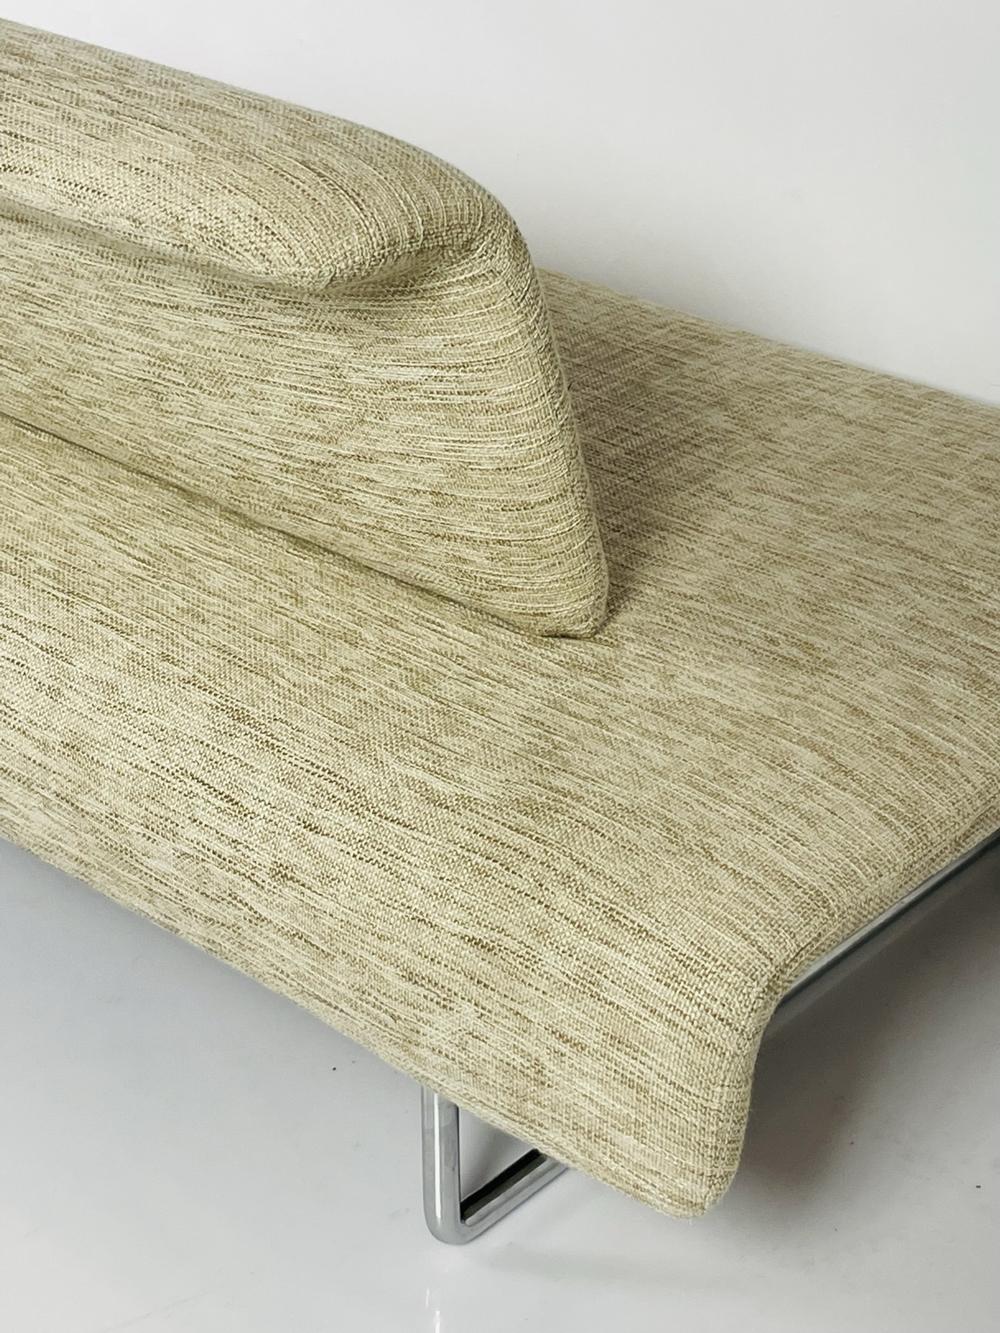 Textile Cloud Sofa by Naoto Fukasawa for B&B Italia For Sale